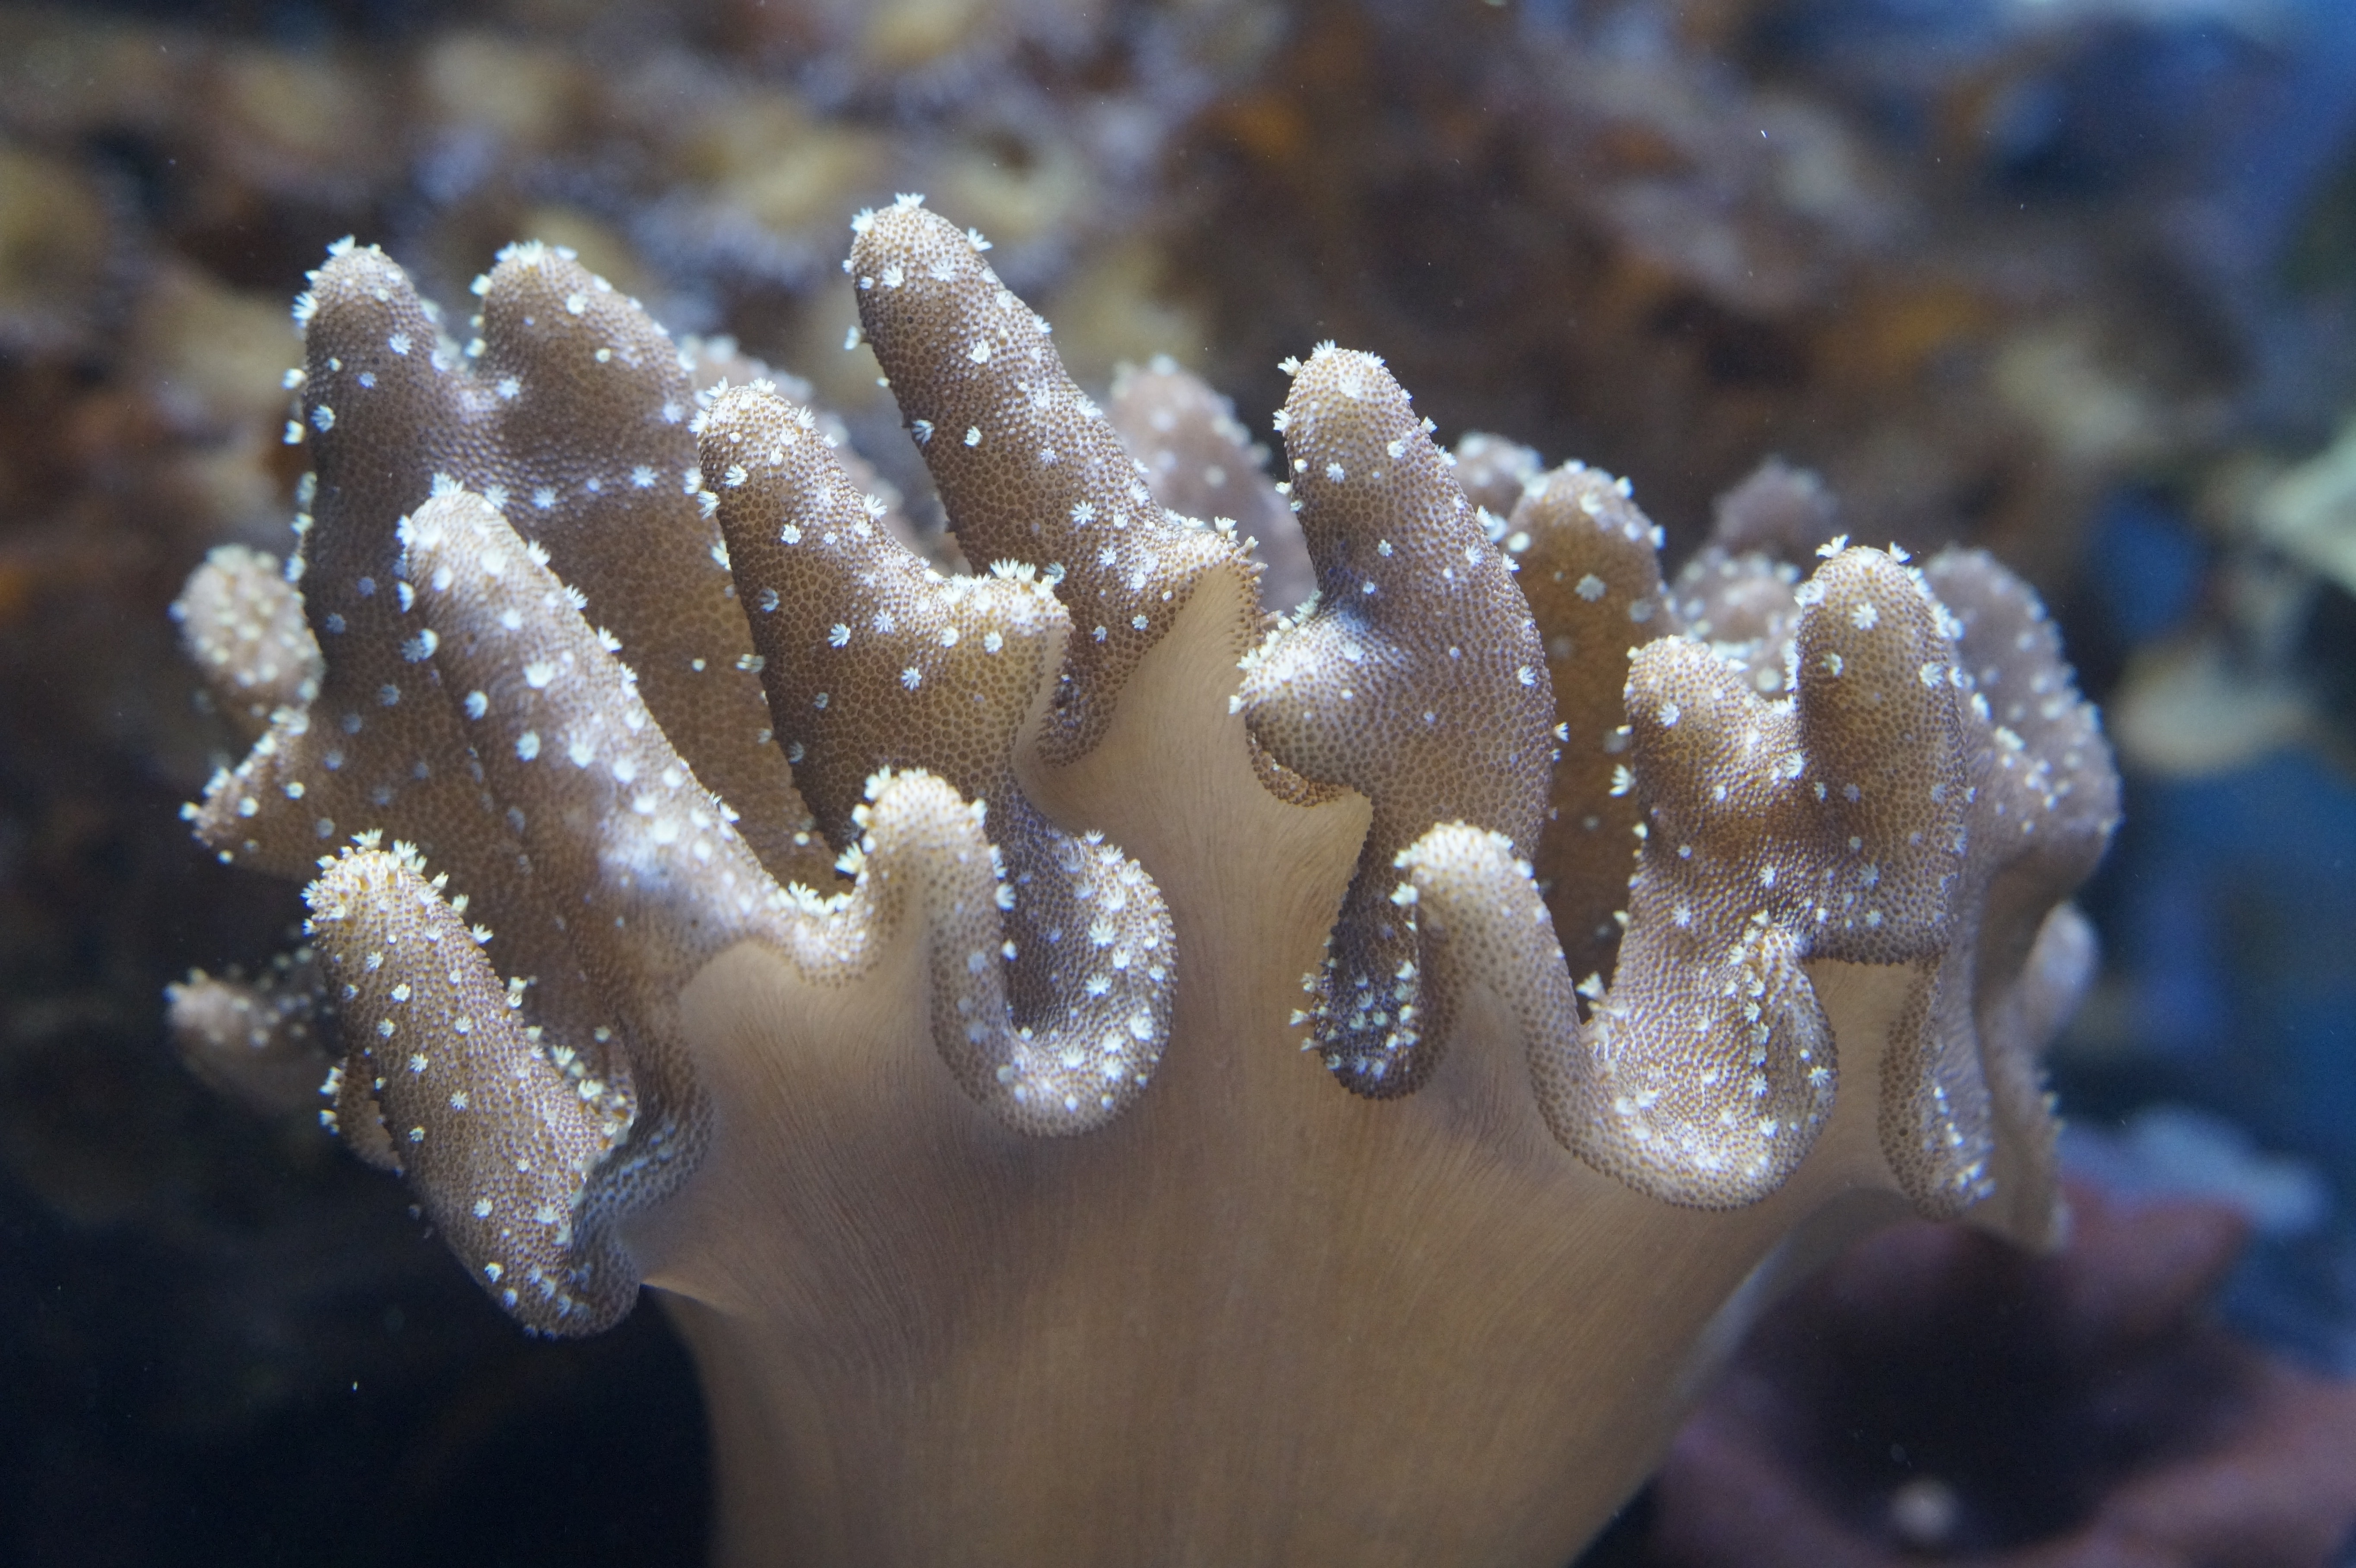 Mollusk, Coral, Invertebrates, Ocean, close-up, underwater